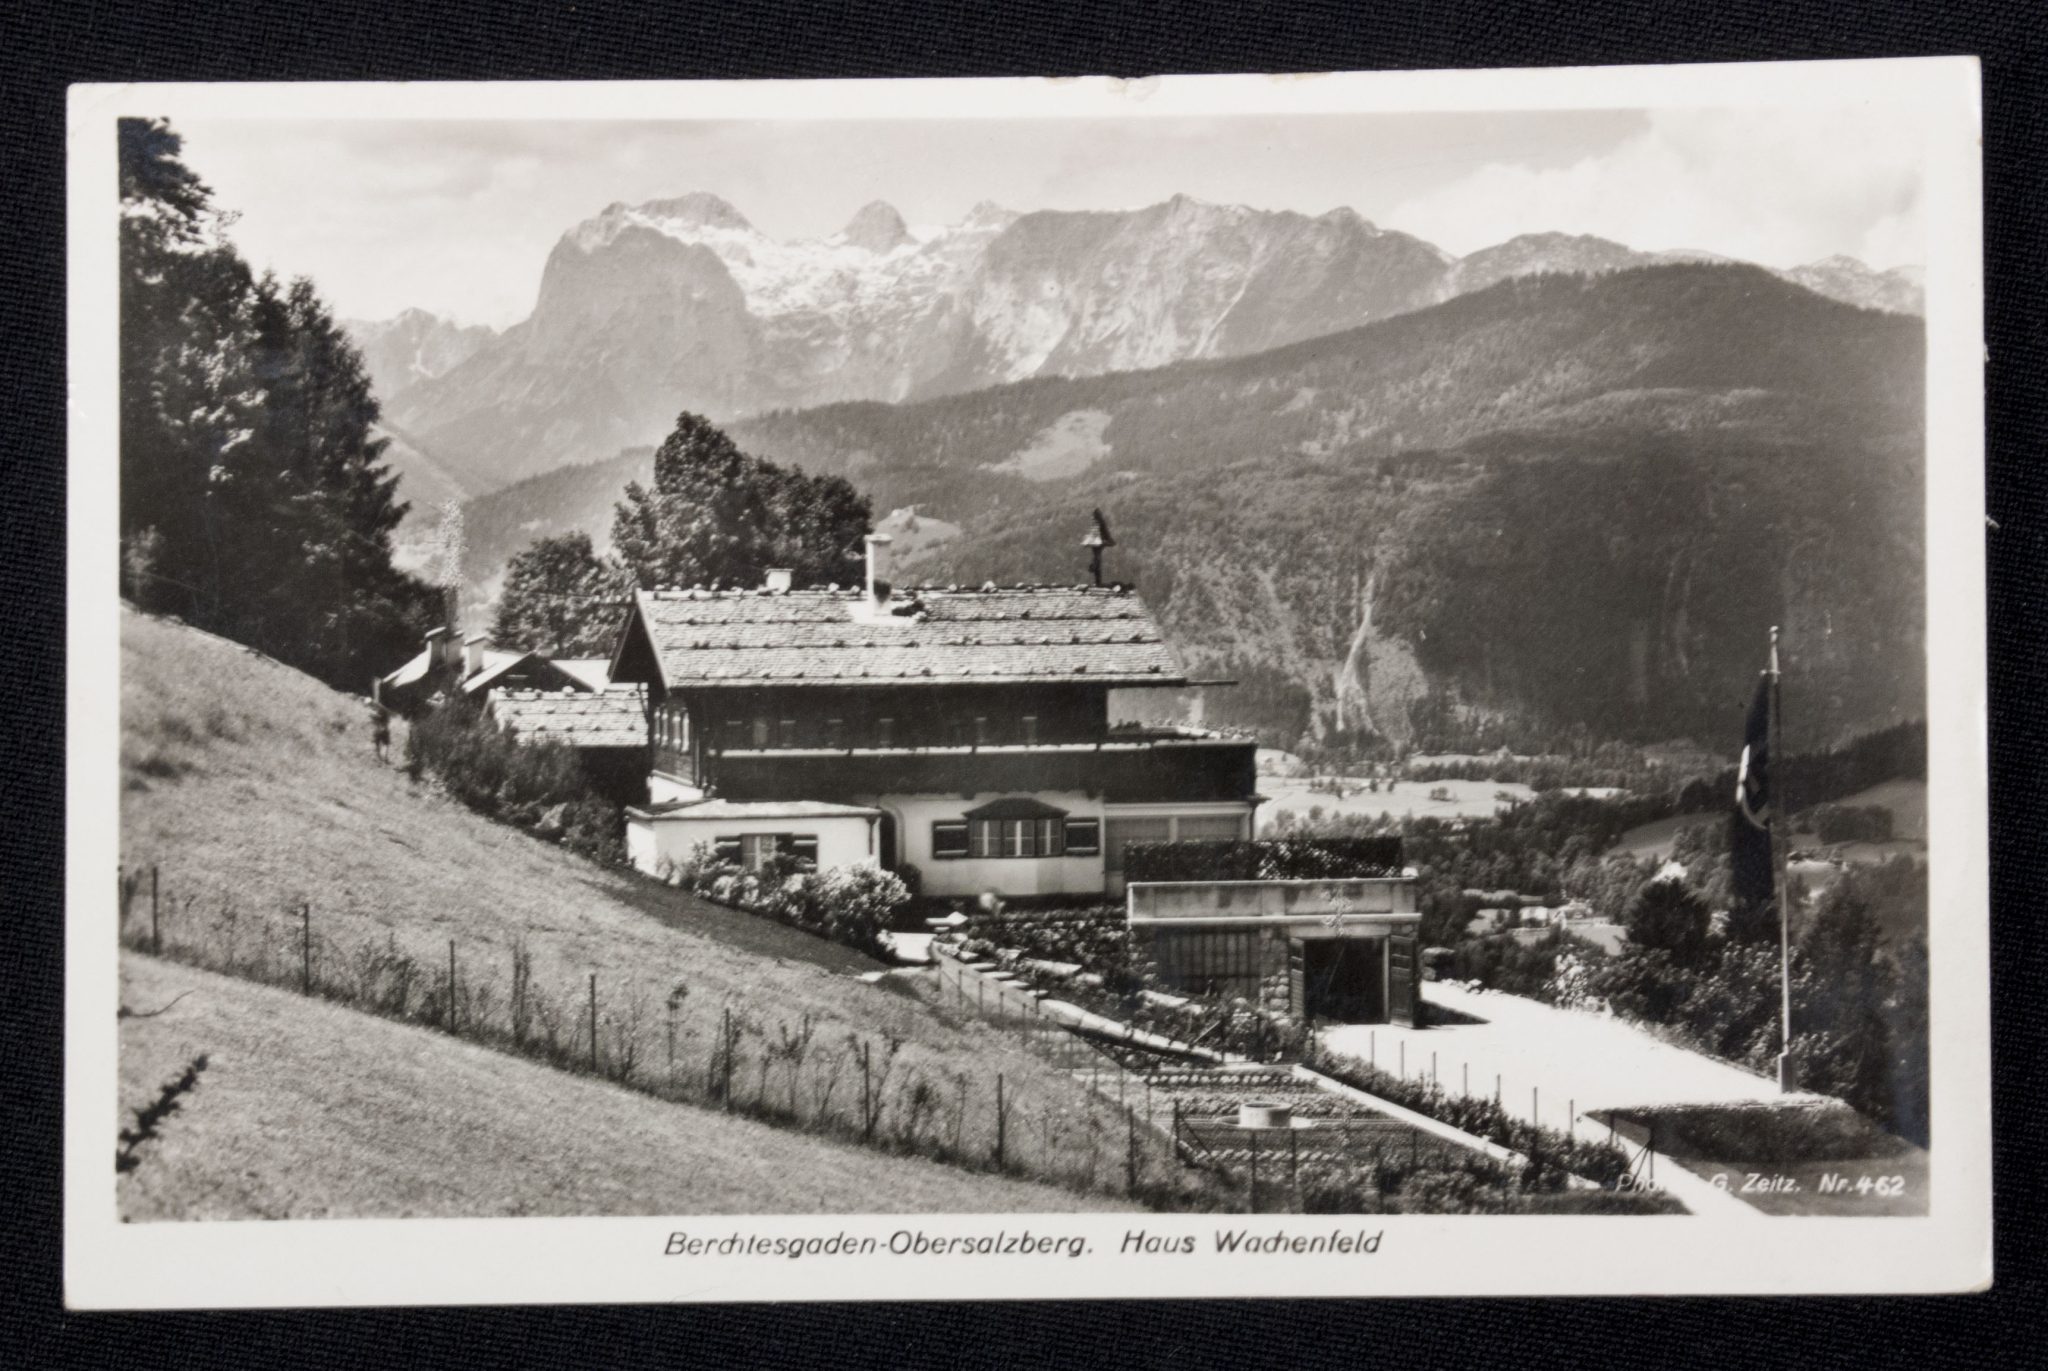 (Postcard) Berchtesgaden-Obersalzberg. Haus Wachenfeld